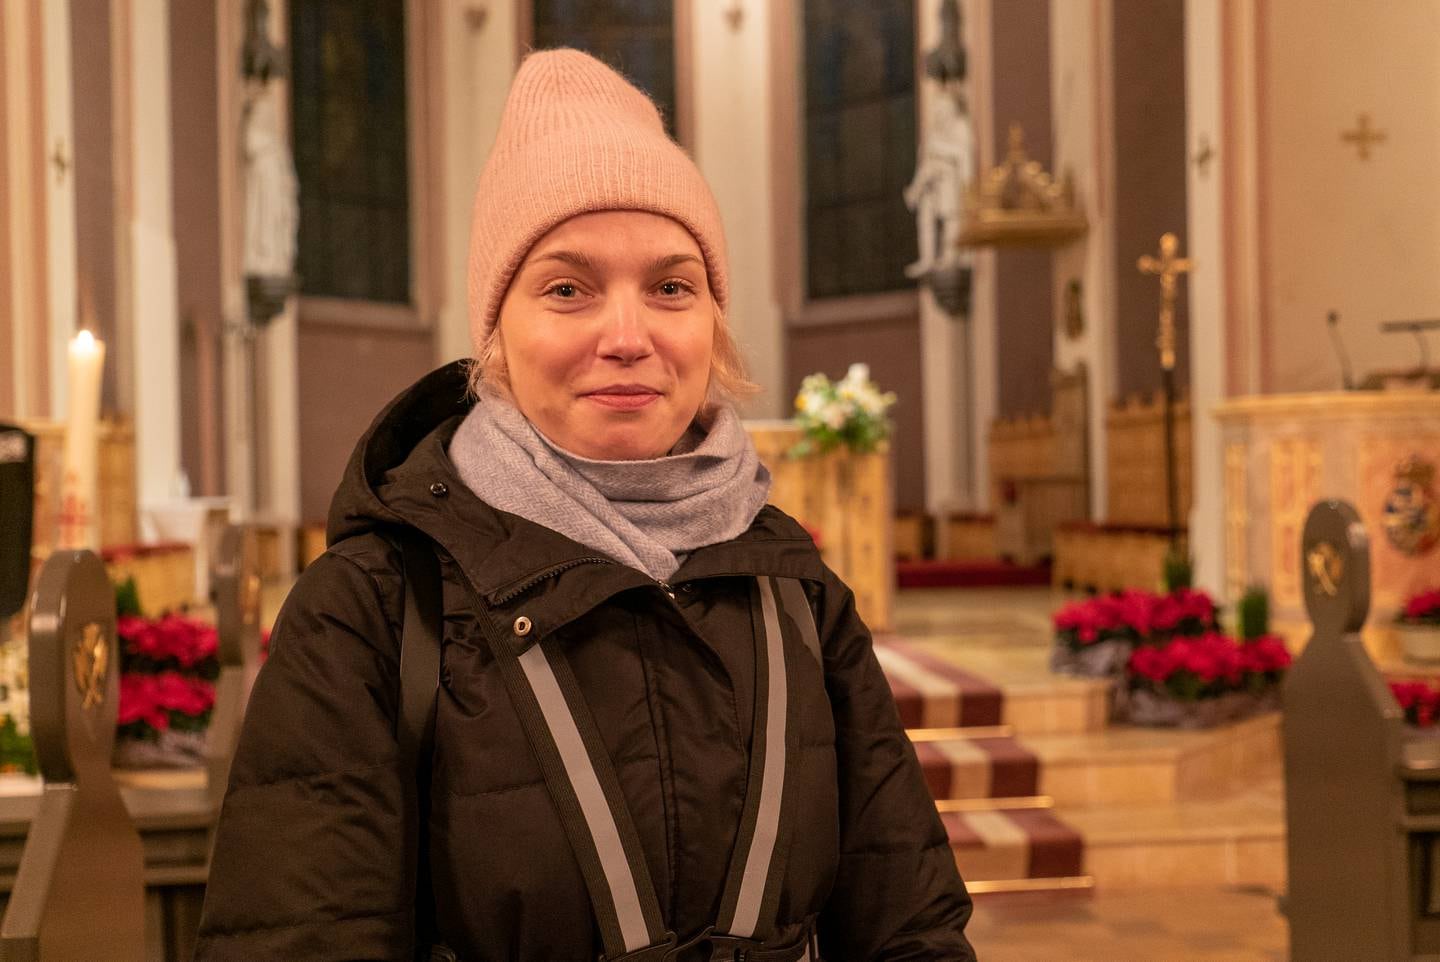 Reportasje i St. Olav domkirke forbindelse med dødsfallet og gravferda til pave Benedikt 16.